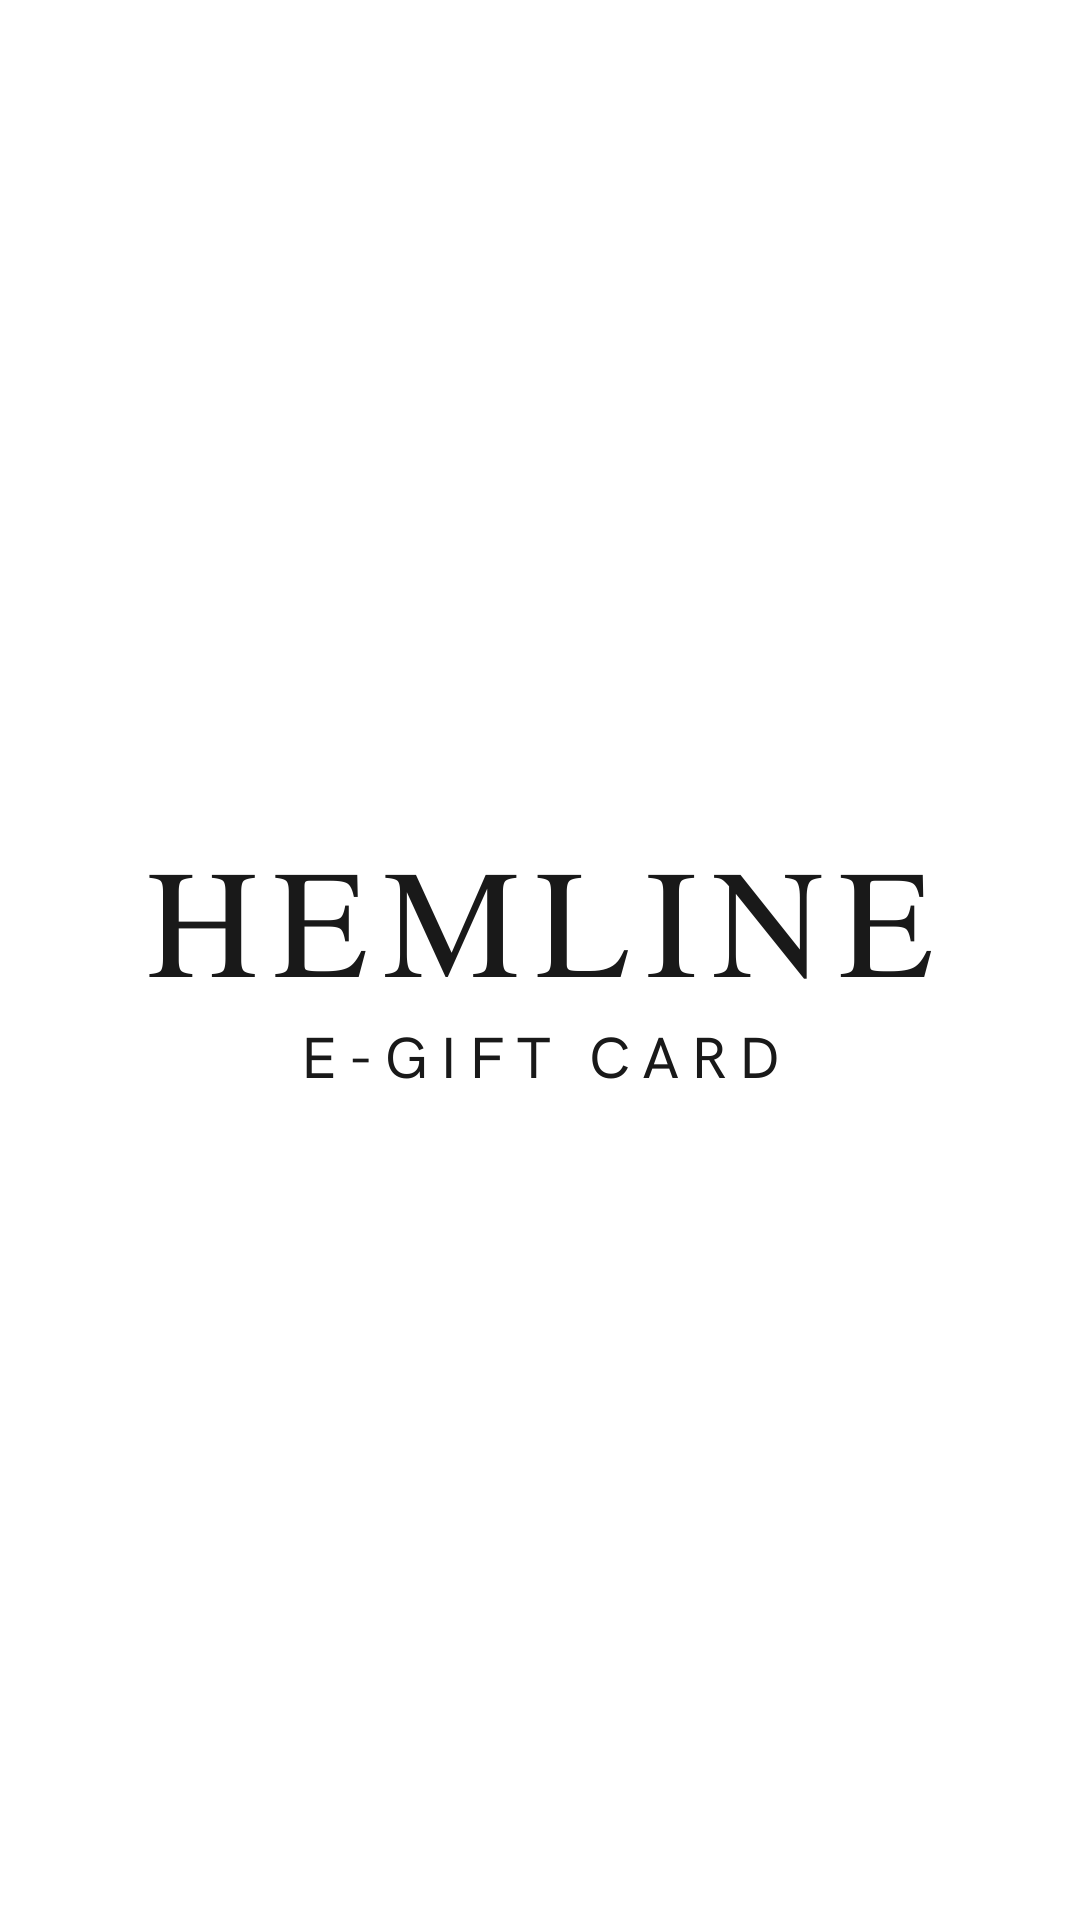 Hemline Lubbock E-Gift Card